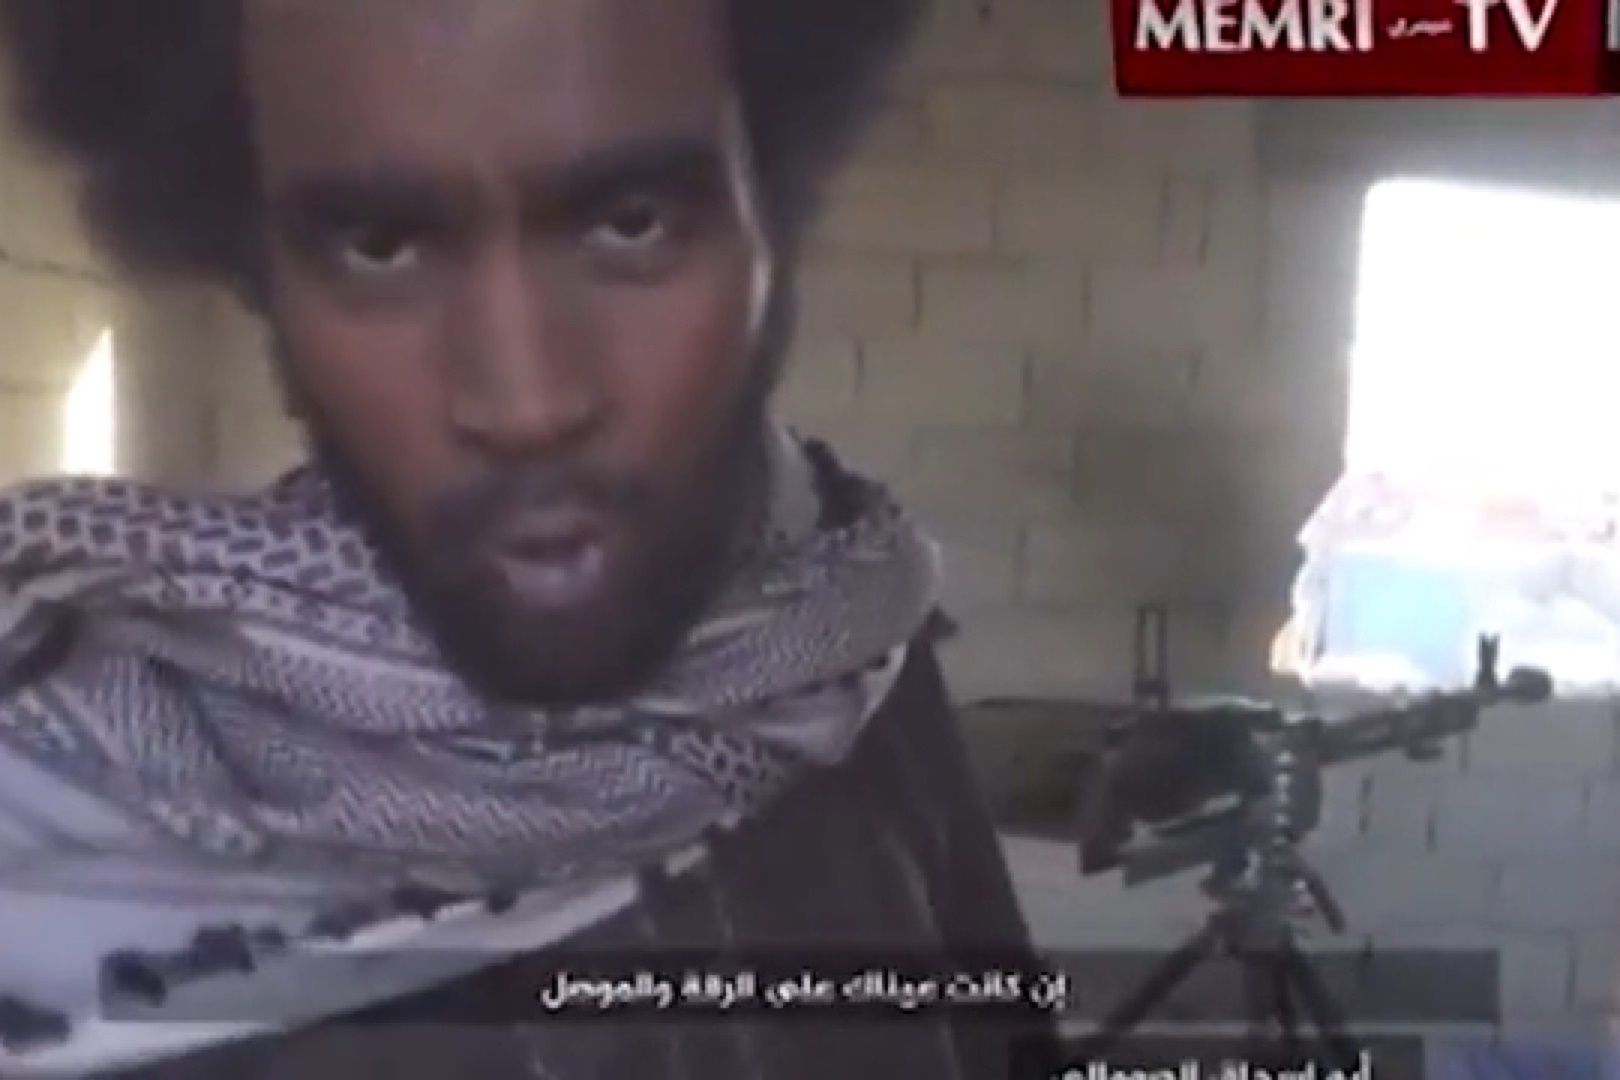 فیلم | تهدید ویدئویی دونالد ترامپ توسط یک نیروی داعشی